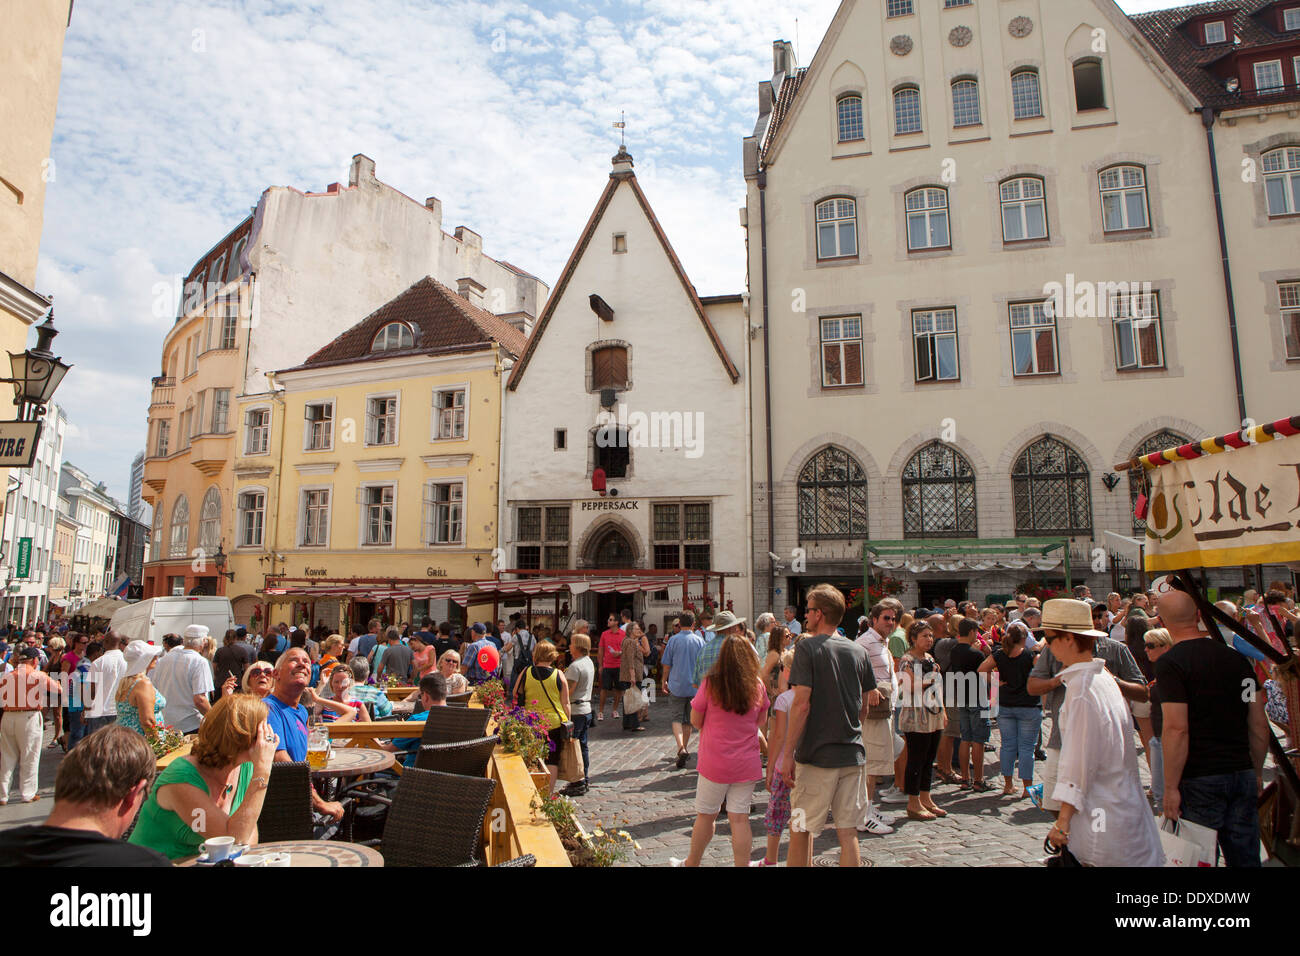 Vieille ville médiévale de Tallinn, capitale et plus grande ville d'Estonie, de l'État balte Banque D'Images